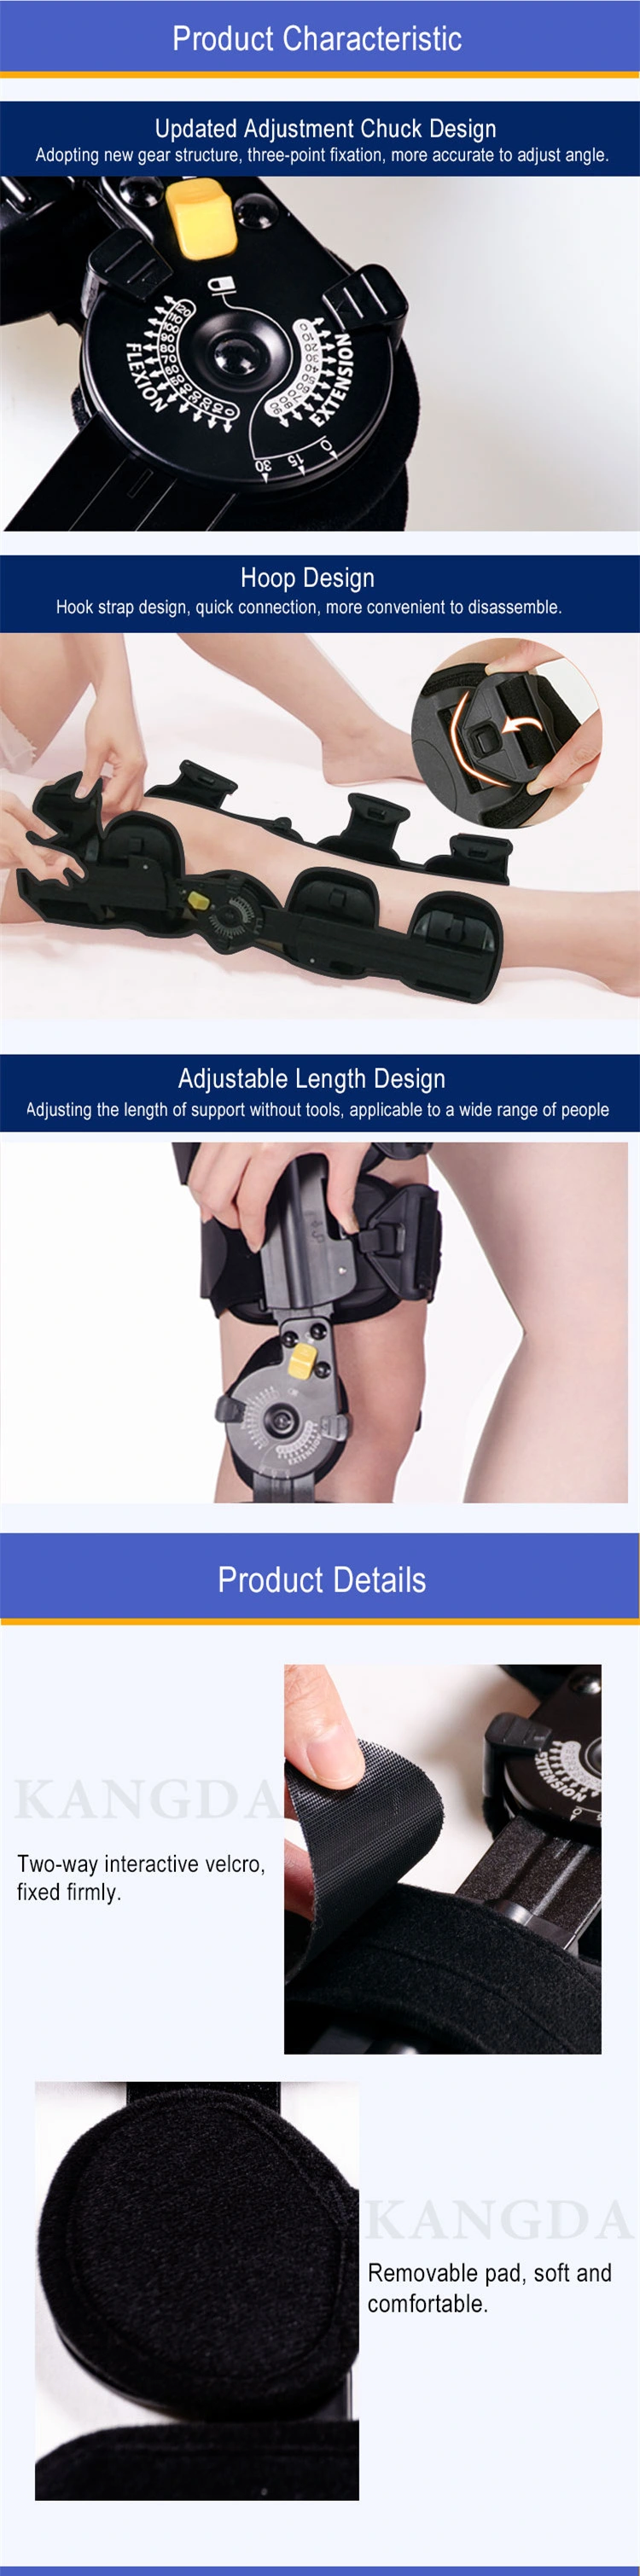 Black Universal Angle Adjustable ROM Knee Brace